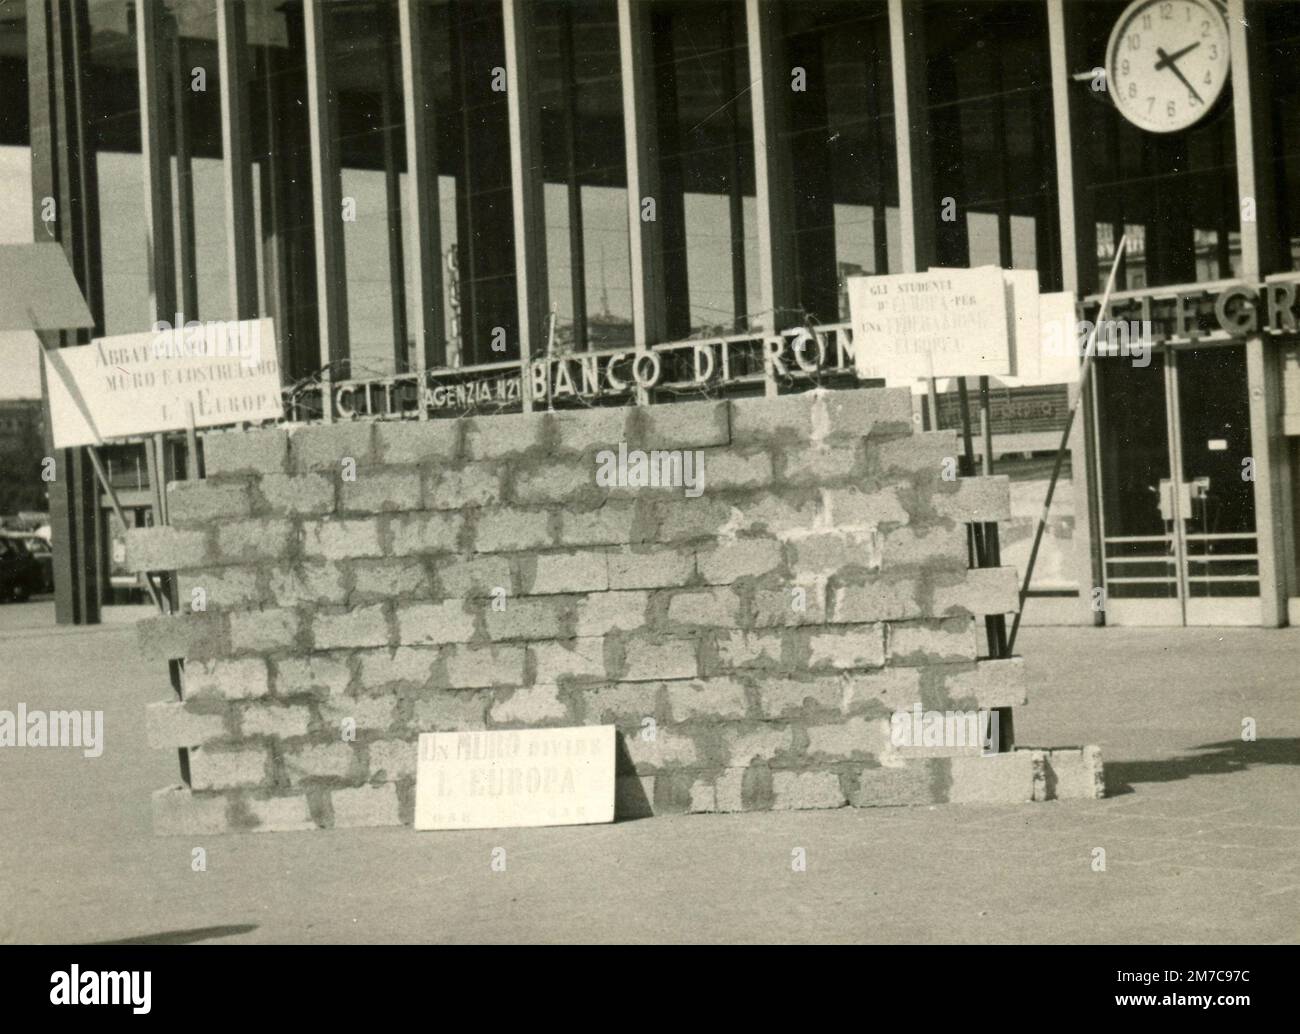 Protesta contra el Muro de Berlín en la Stazione Termini, Roma, Italia 1960s Foto de stock